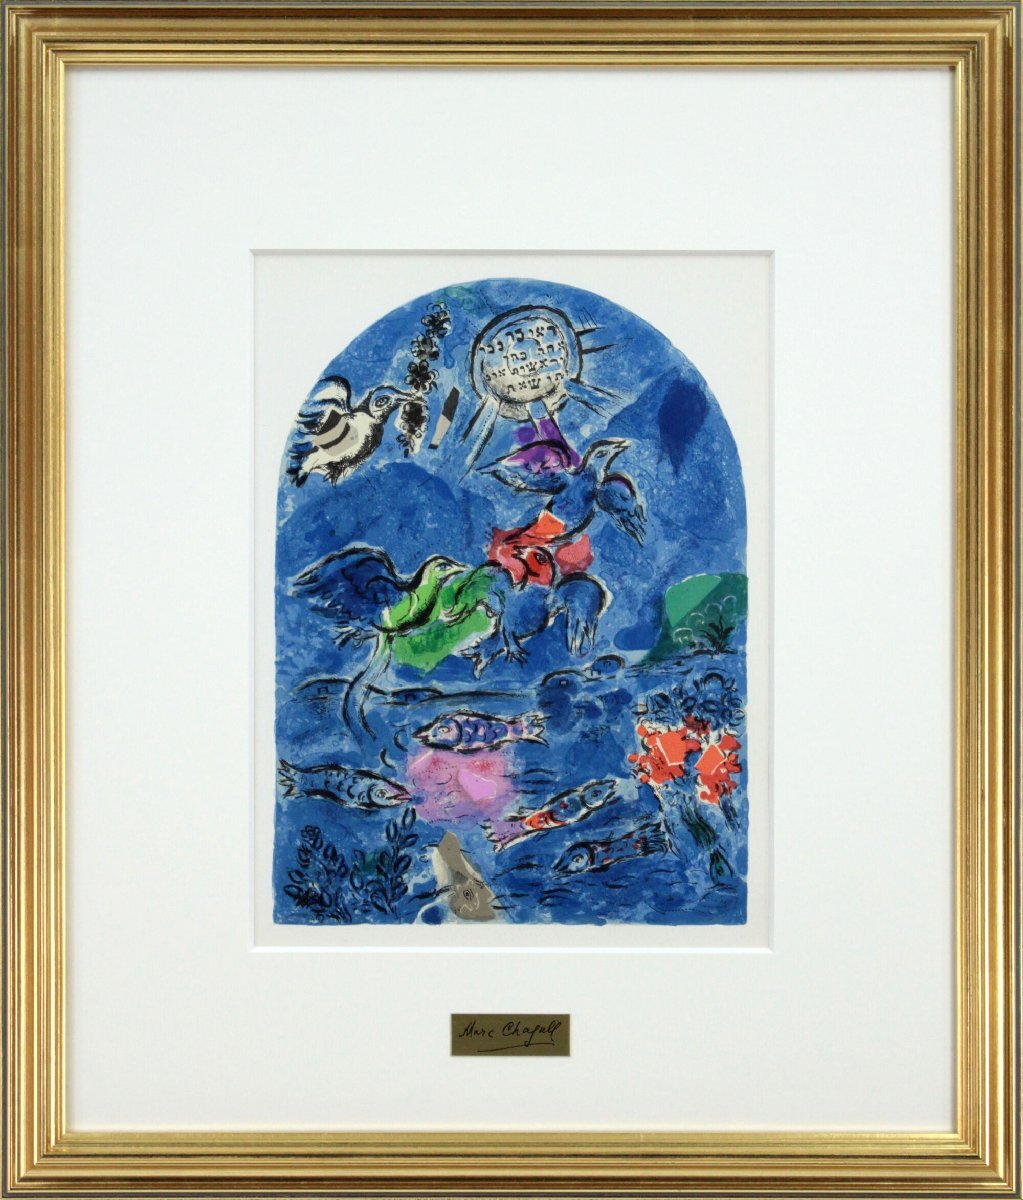 Marc Chagall The Rubens: Litografía de la ventana de Jerusalén [Auténtica garantizada] Pintura - Galería Hokkaido, Obra de arte, Huellas dactilares, Litografía, Litografía